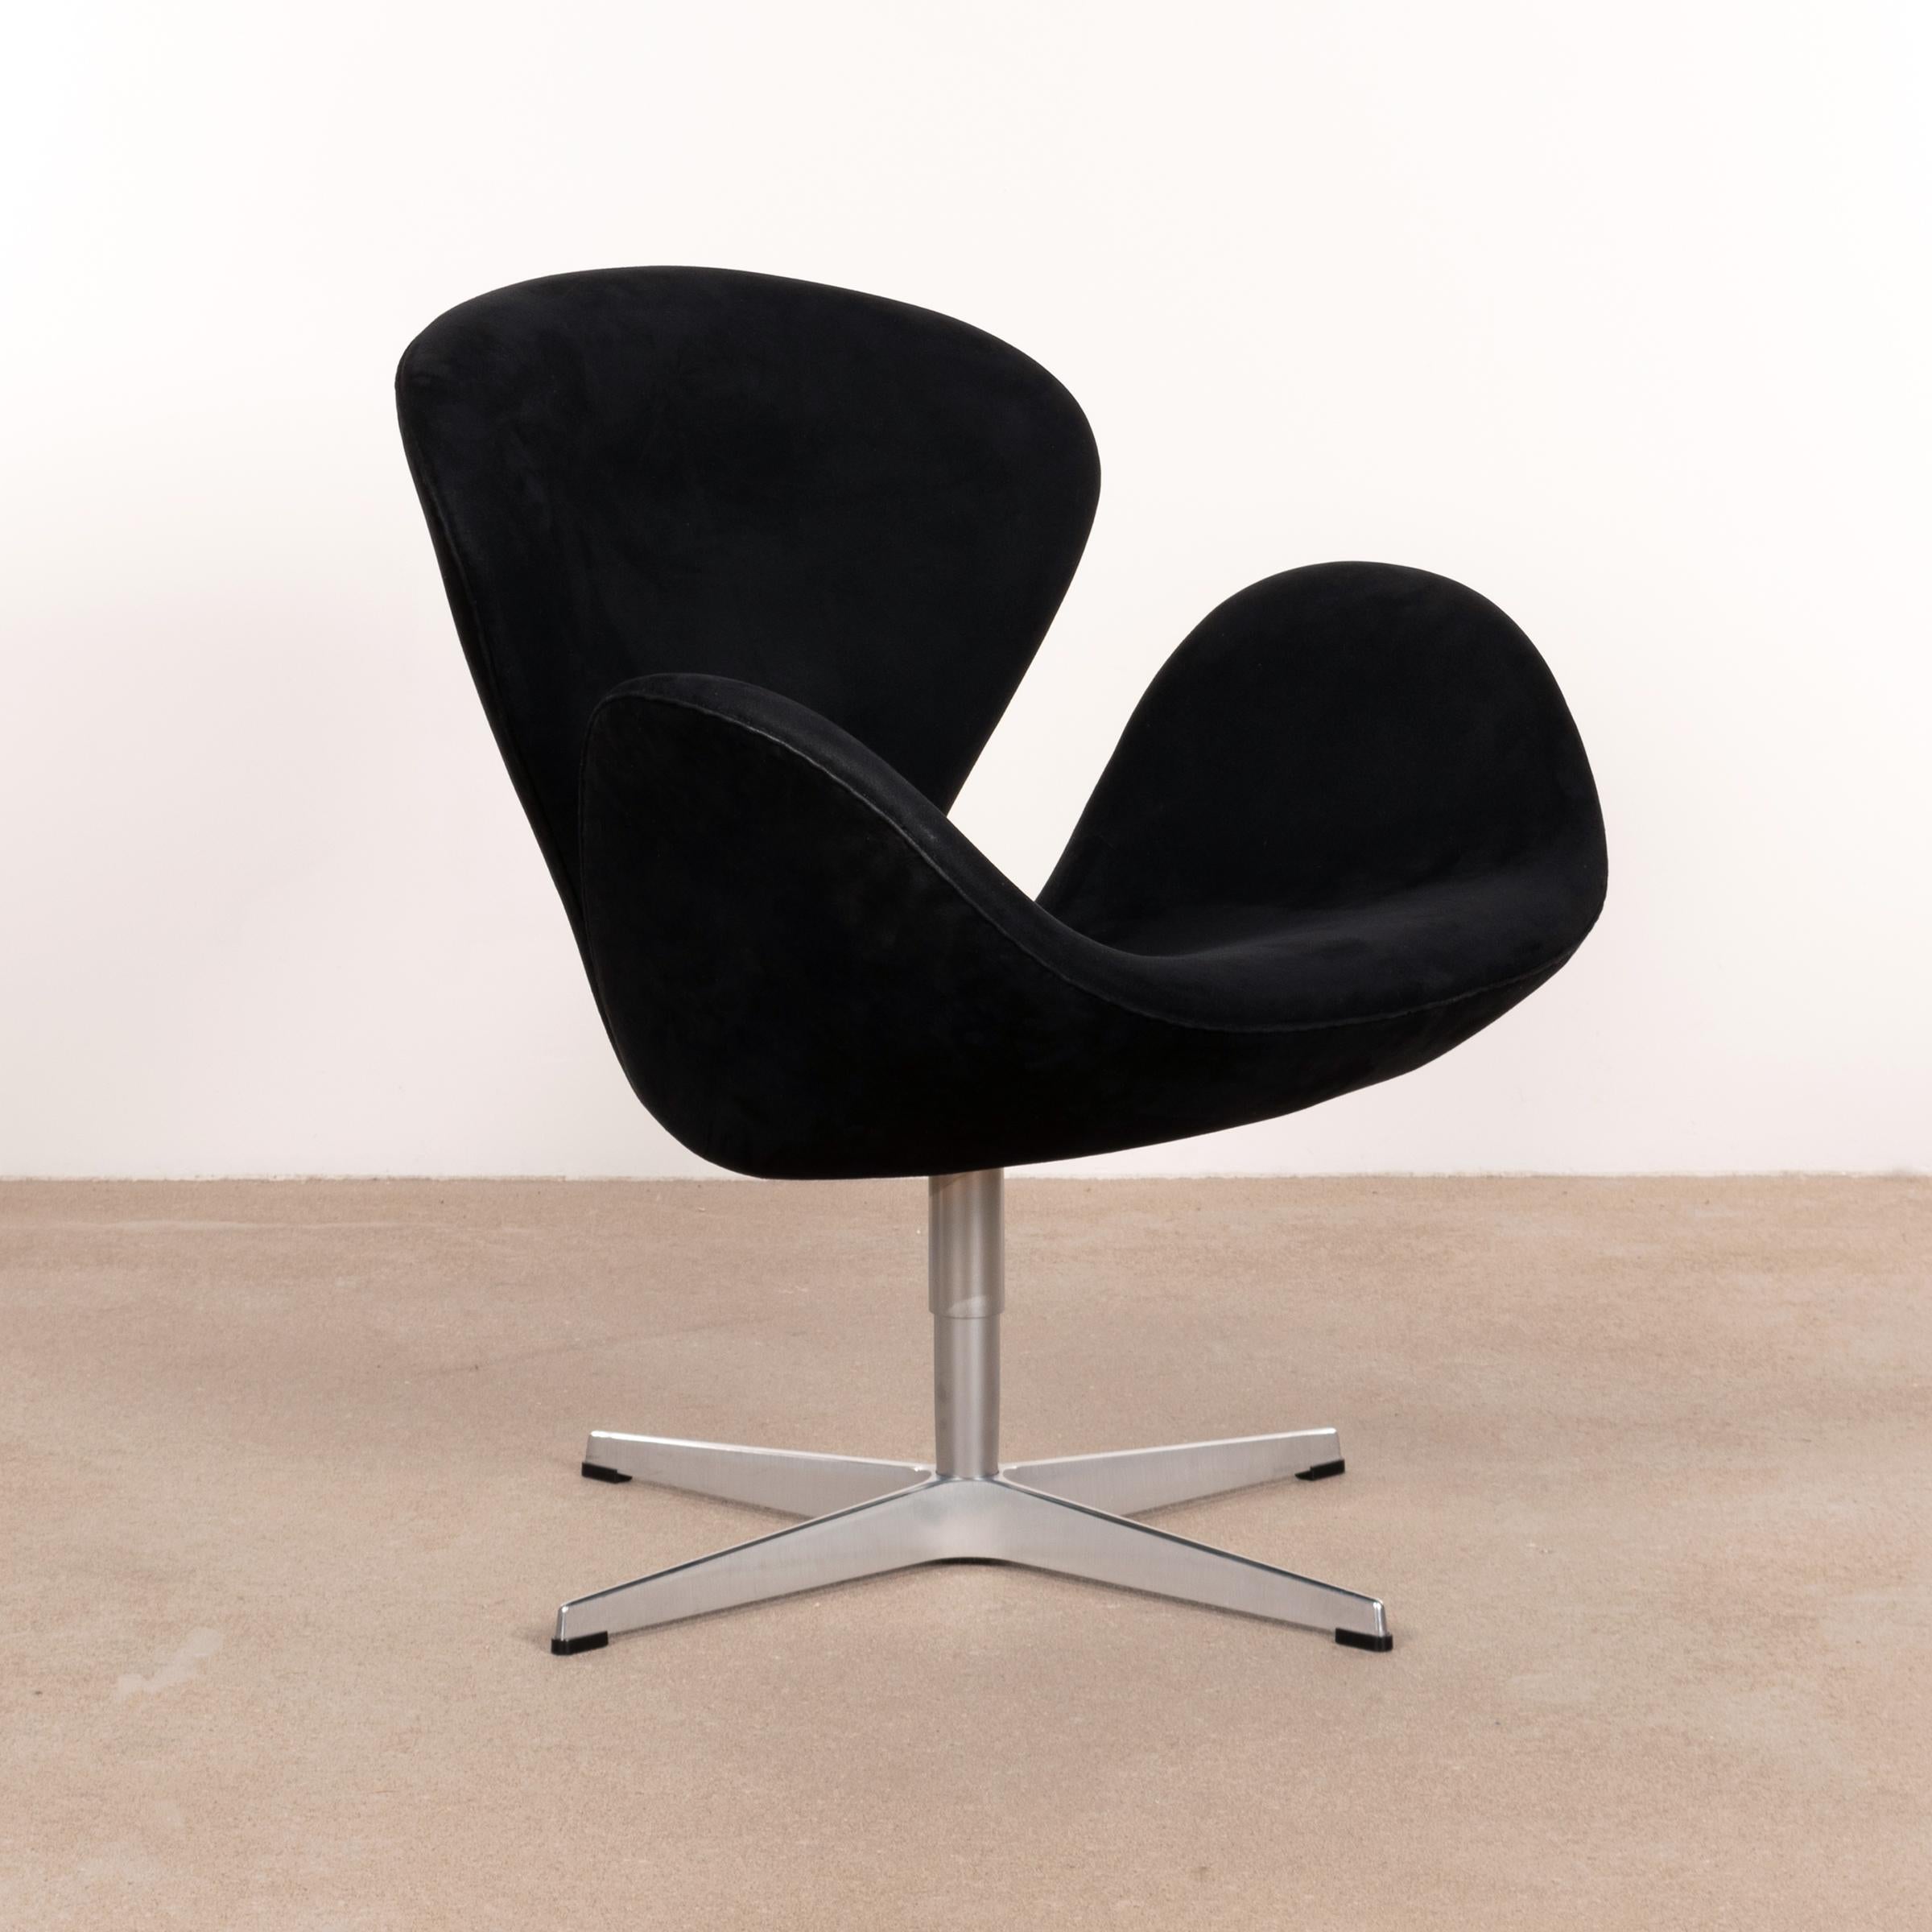 Polished Arne Jacobsen Swan Chair in Black Alcantara for Fritz Hansen, Denmark